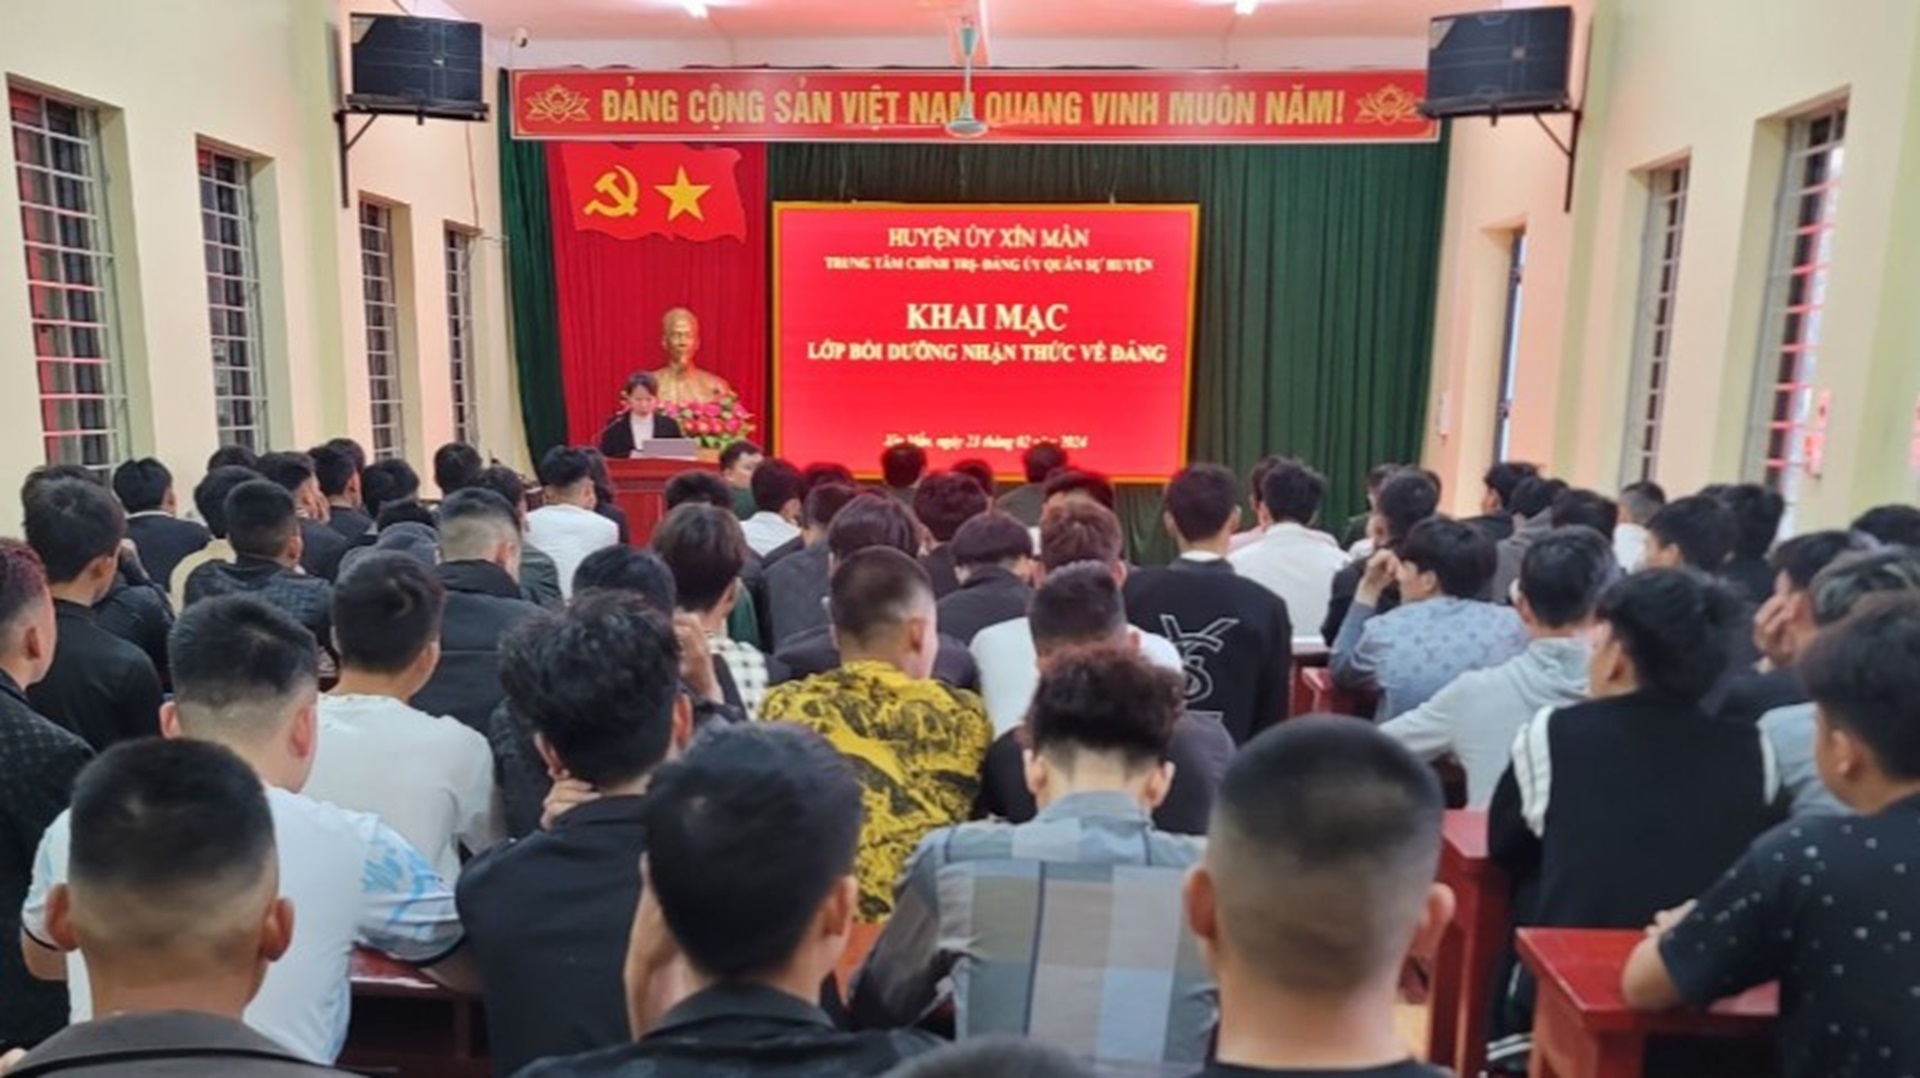  Huyện Xín Mần Khai mạc lớp bồi dưỡng nhận thức về Đảng